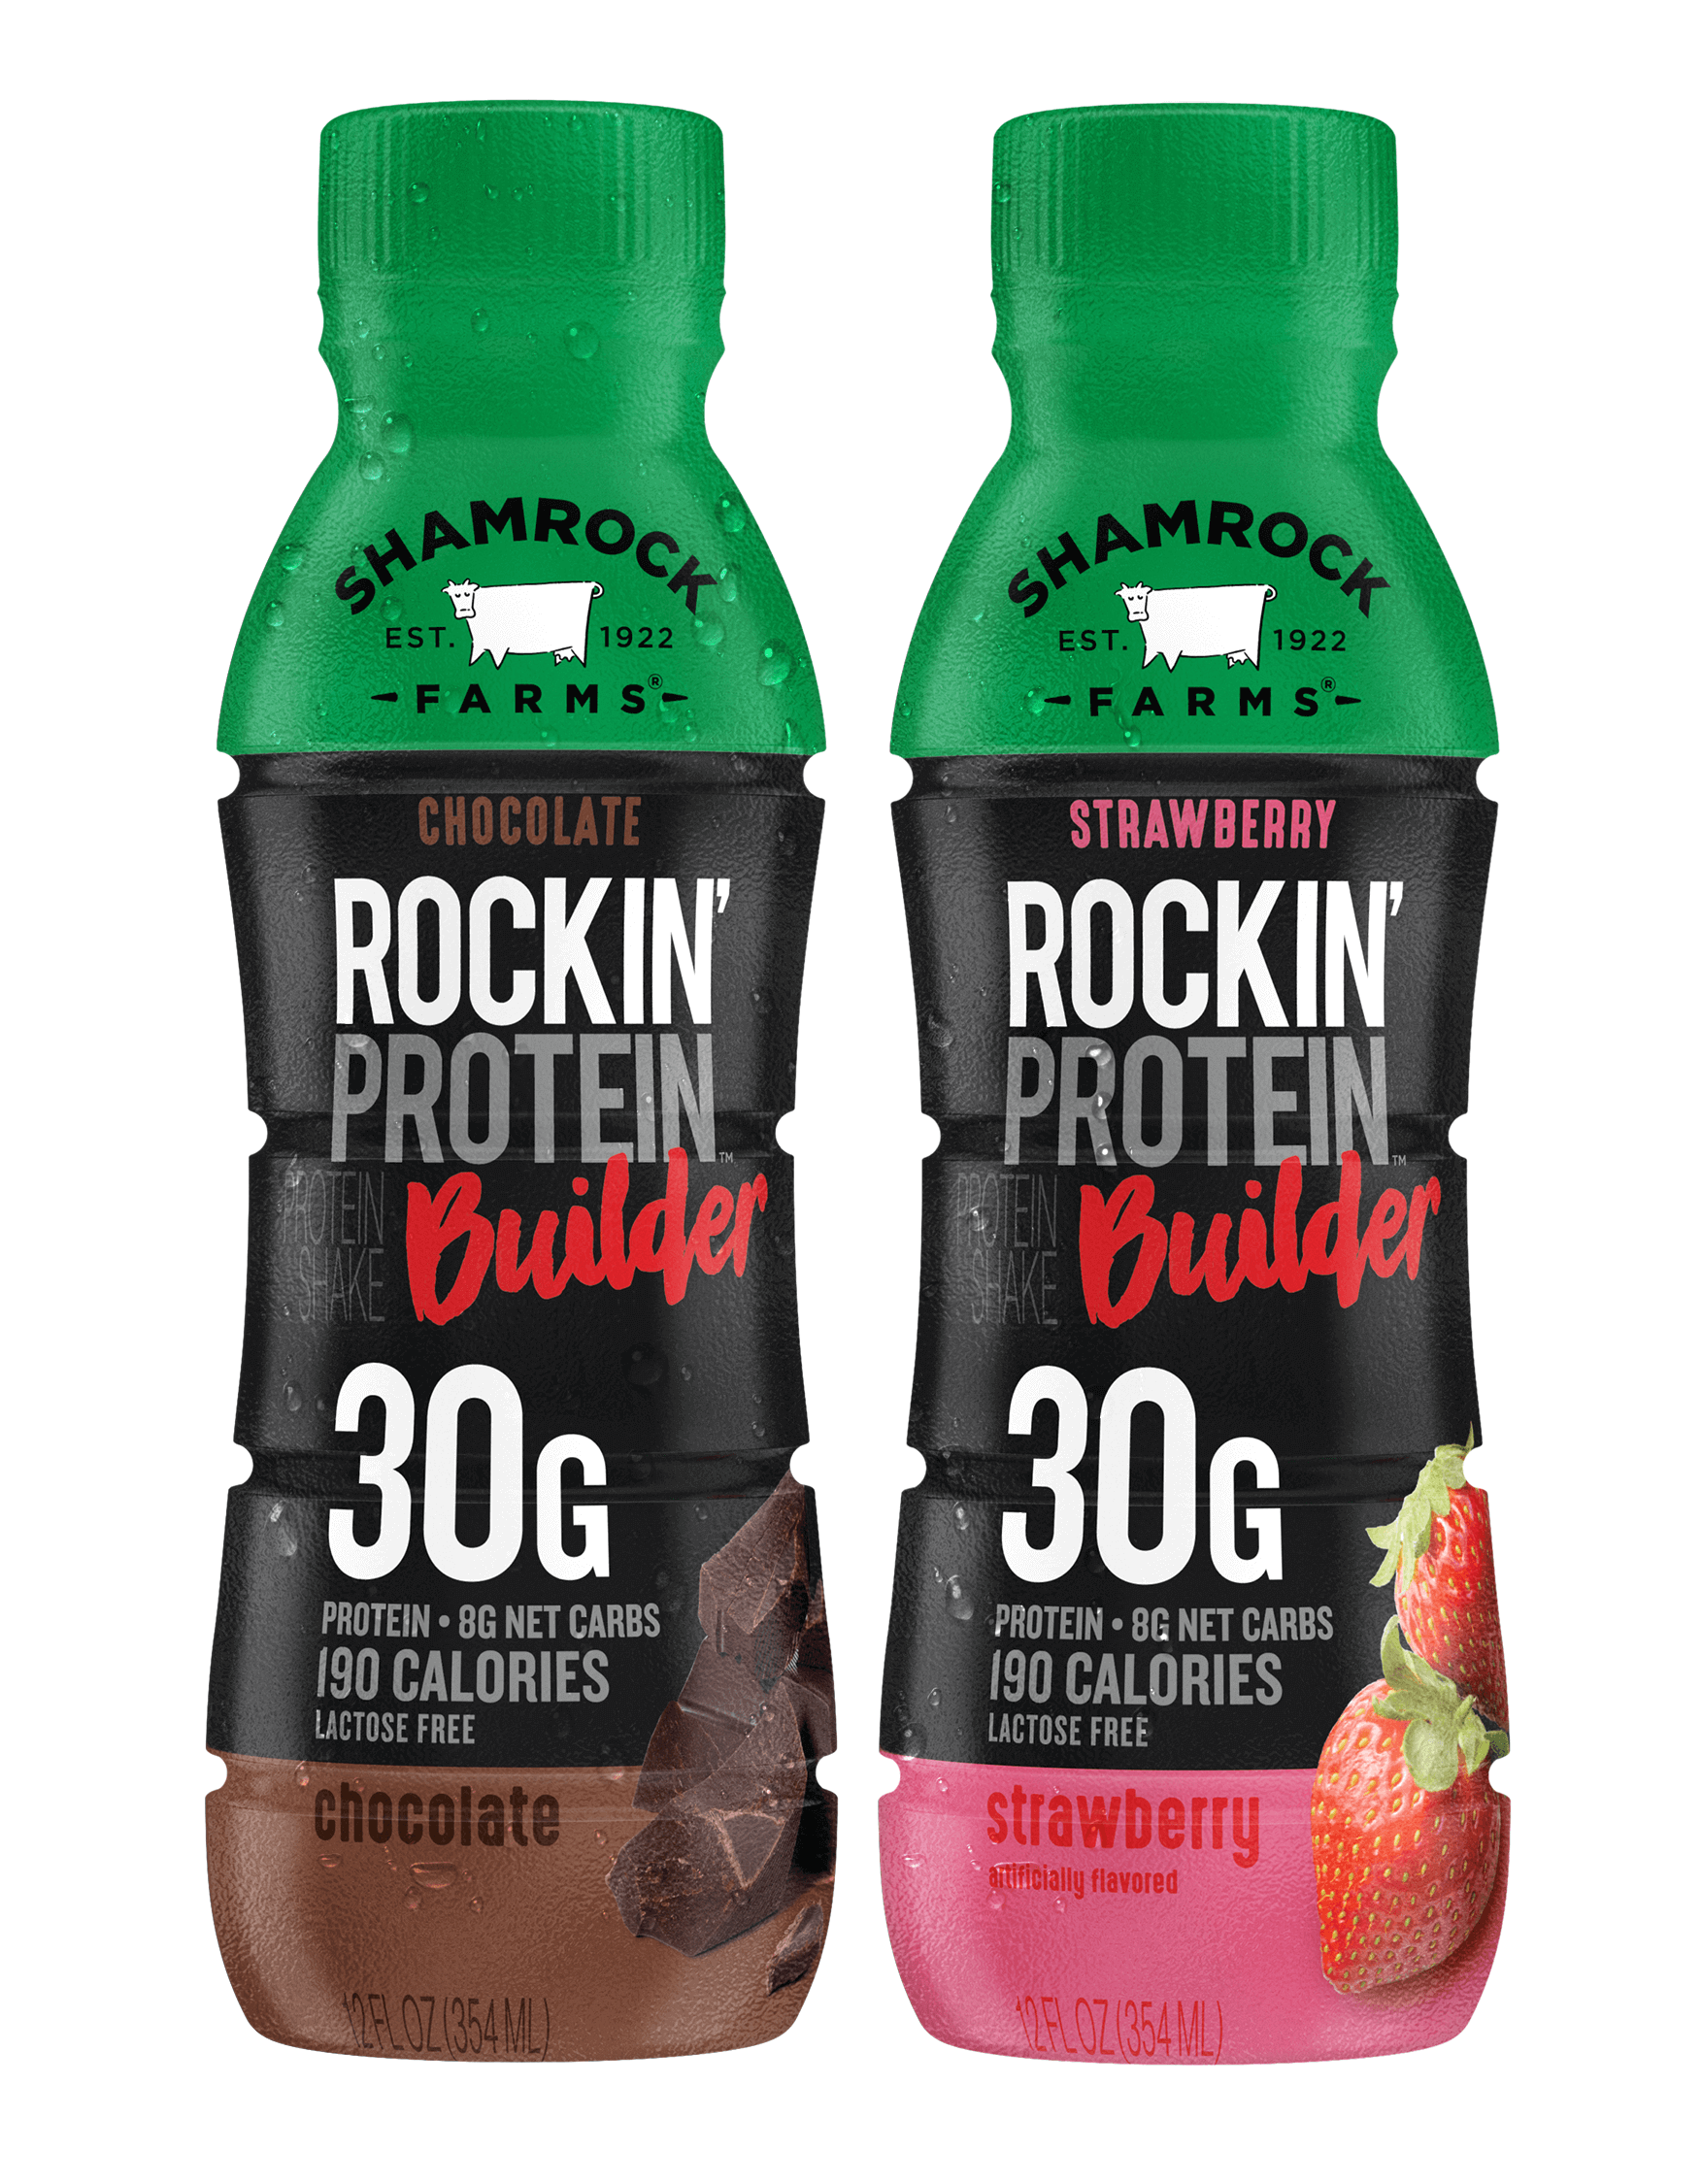 Rockin protein